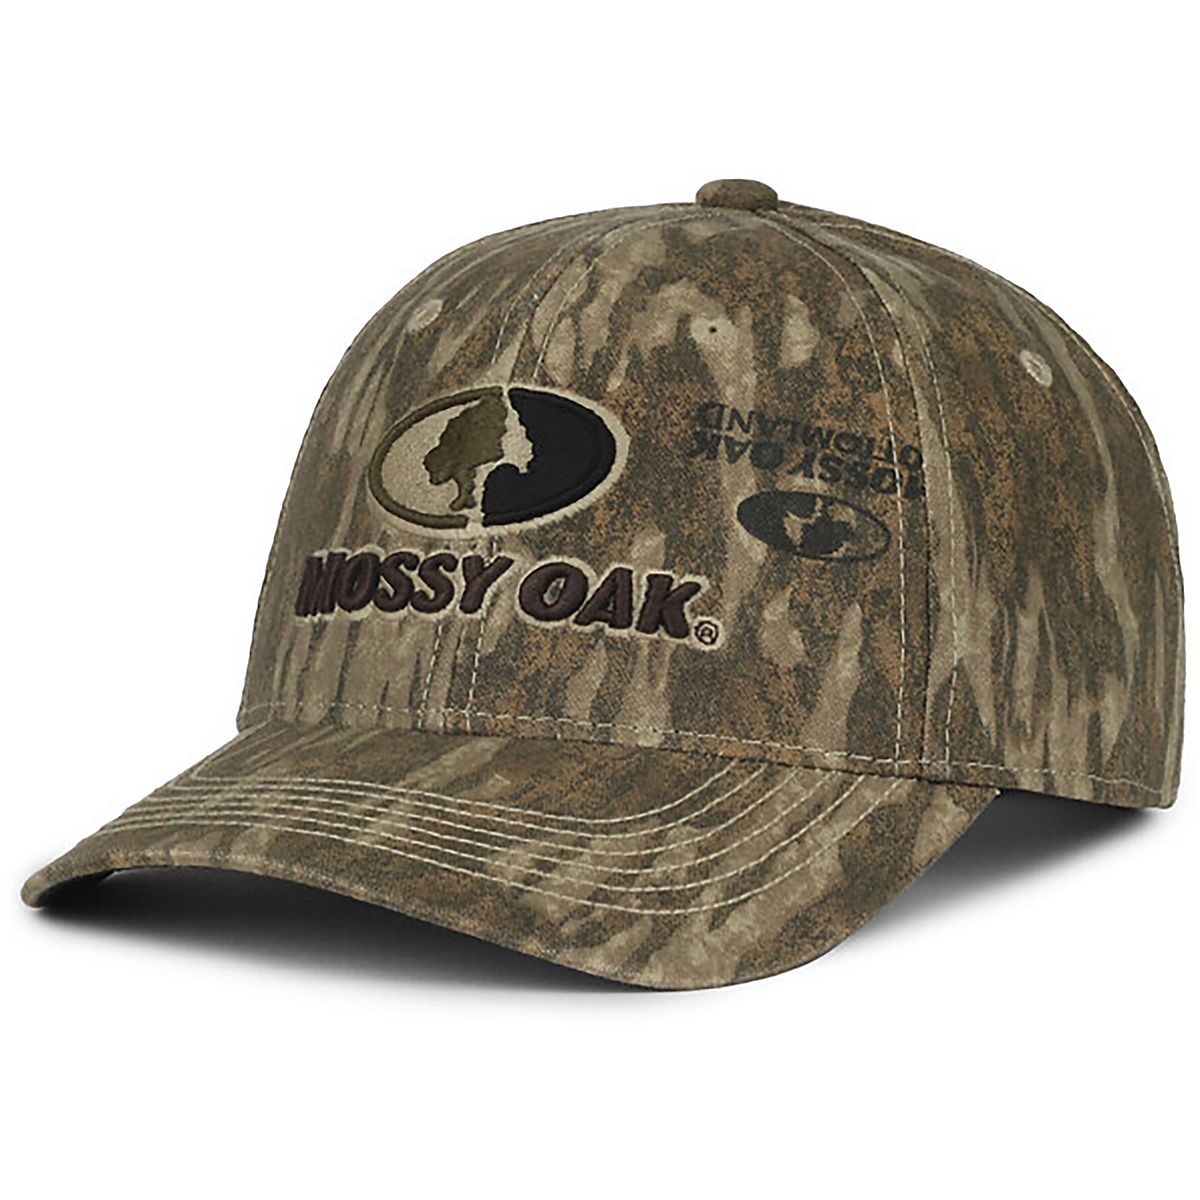 Mossy Oak Men's Outdoor New Bottomland Twill Adjustable Cap